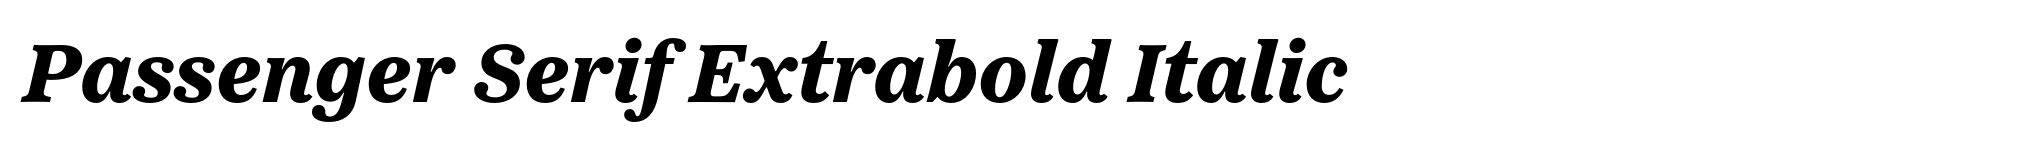 Passenger Serif Extrabold Italic image